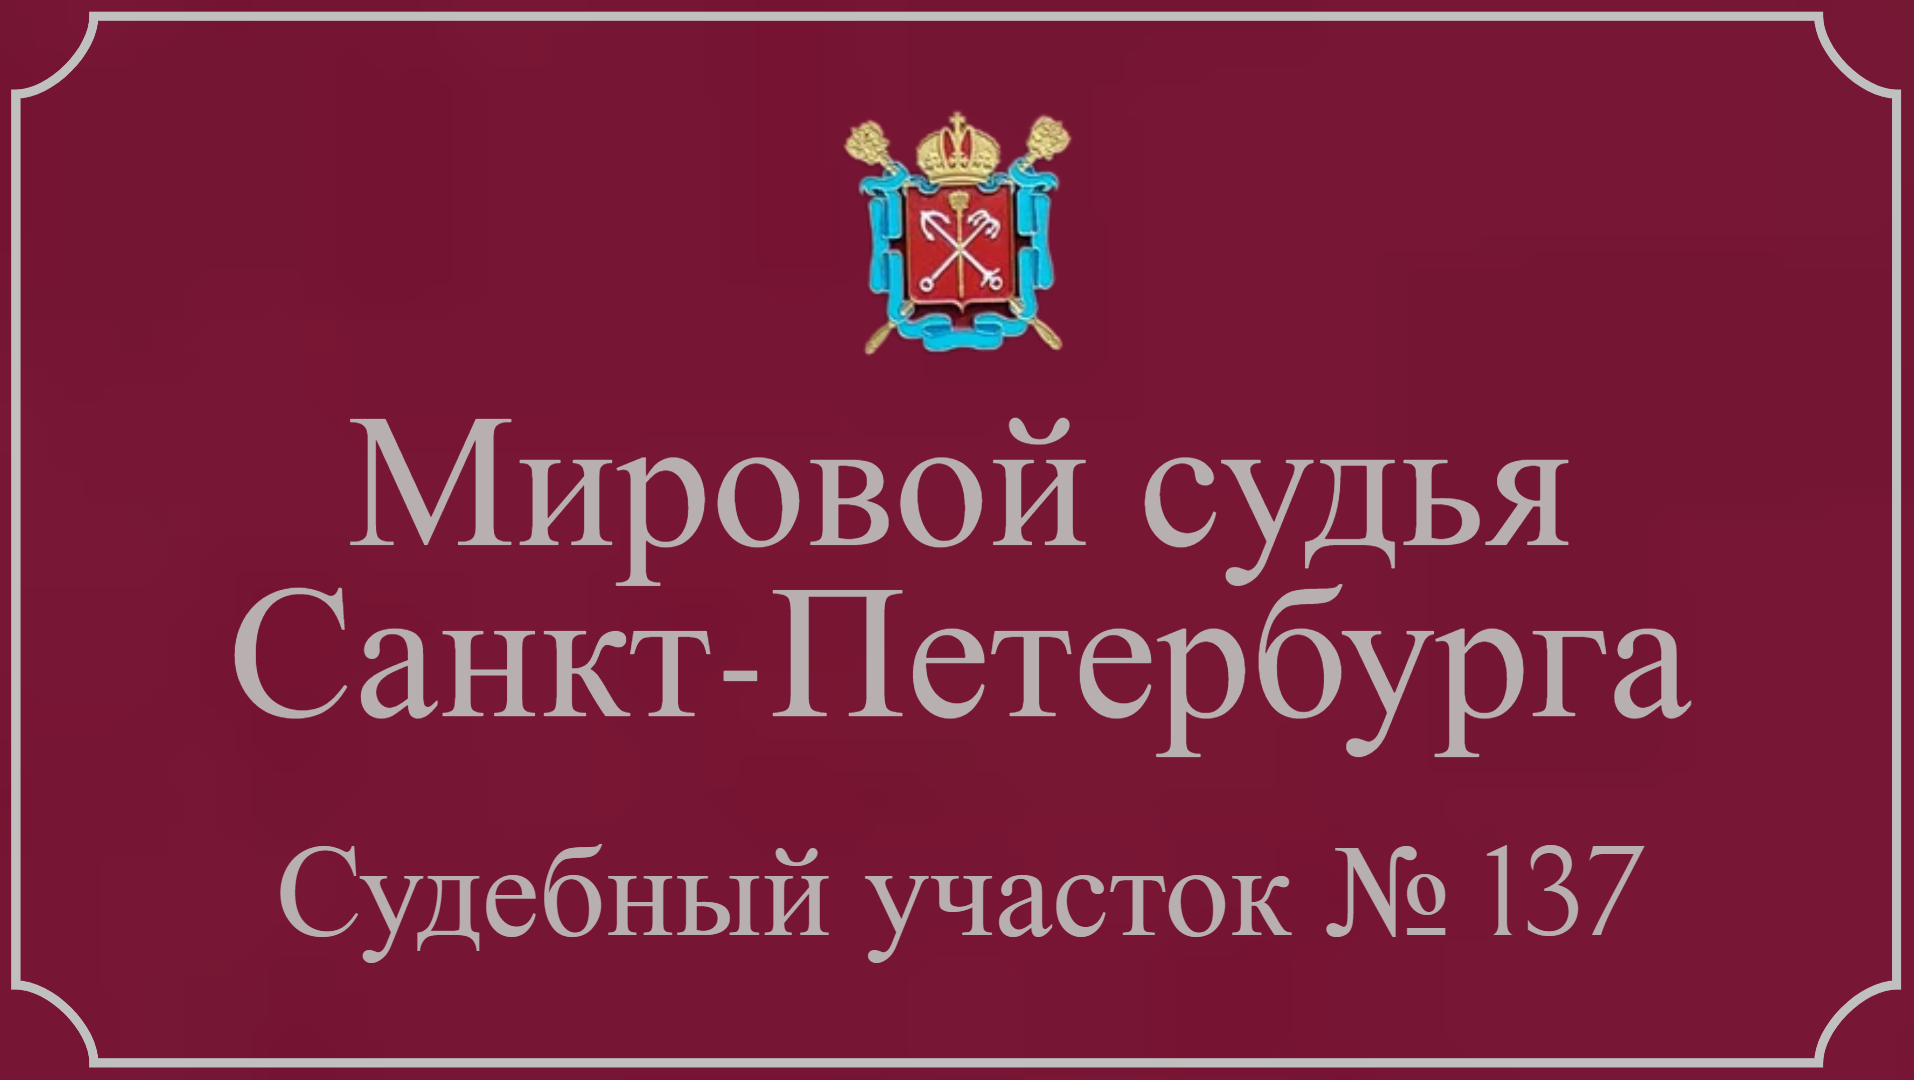 Информация по 137 судебному участку в Санкт-Петербурге.